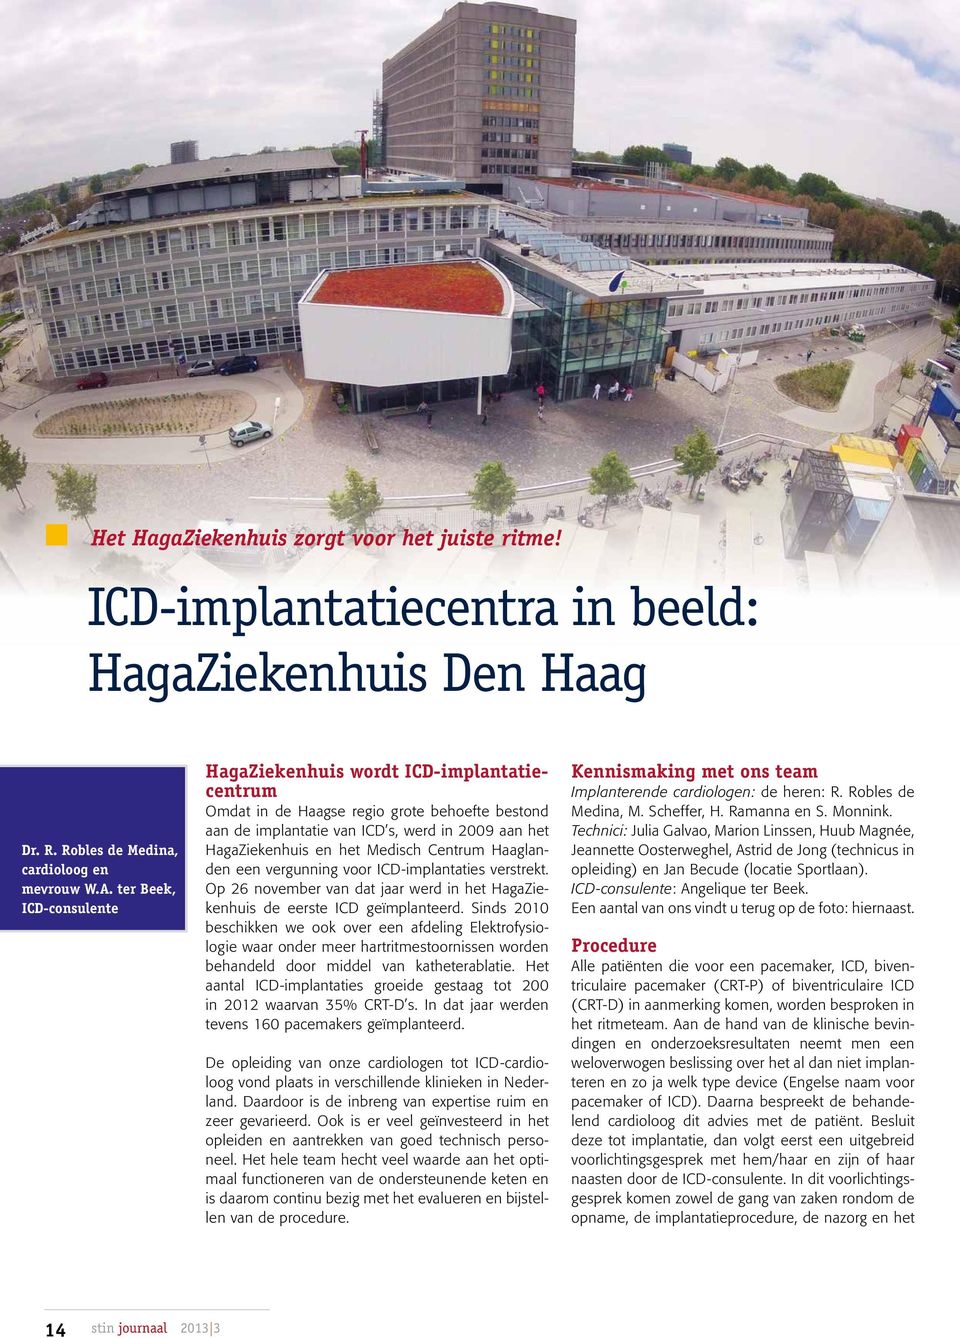 Centrum Haaglanden een vergunning voor ICD-implantaties verstrekt. Op 26 november van dat jaar werd in het HagaZiekenhuis de eerste ICD geïmplanteerd.